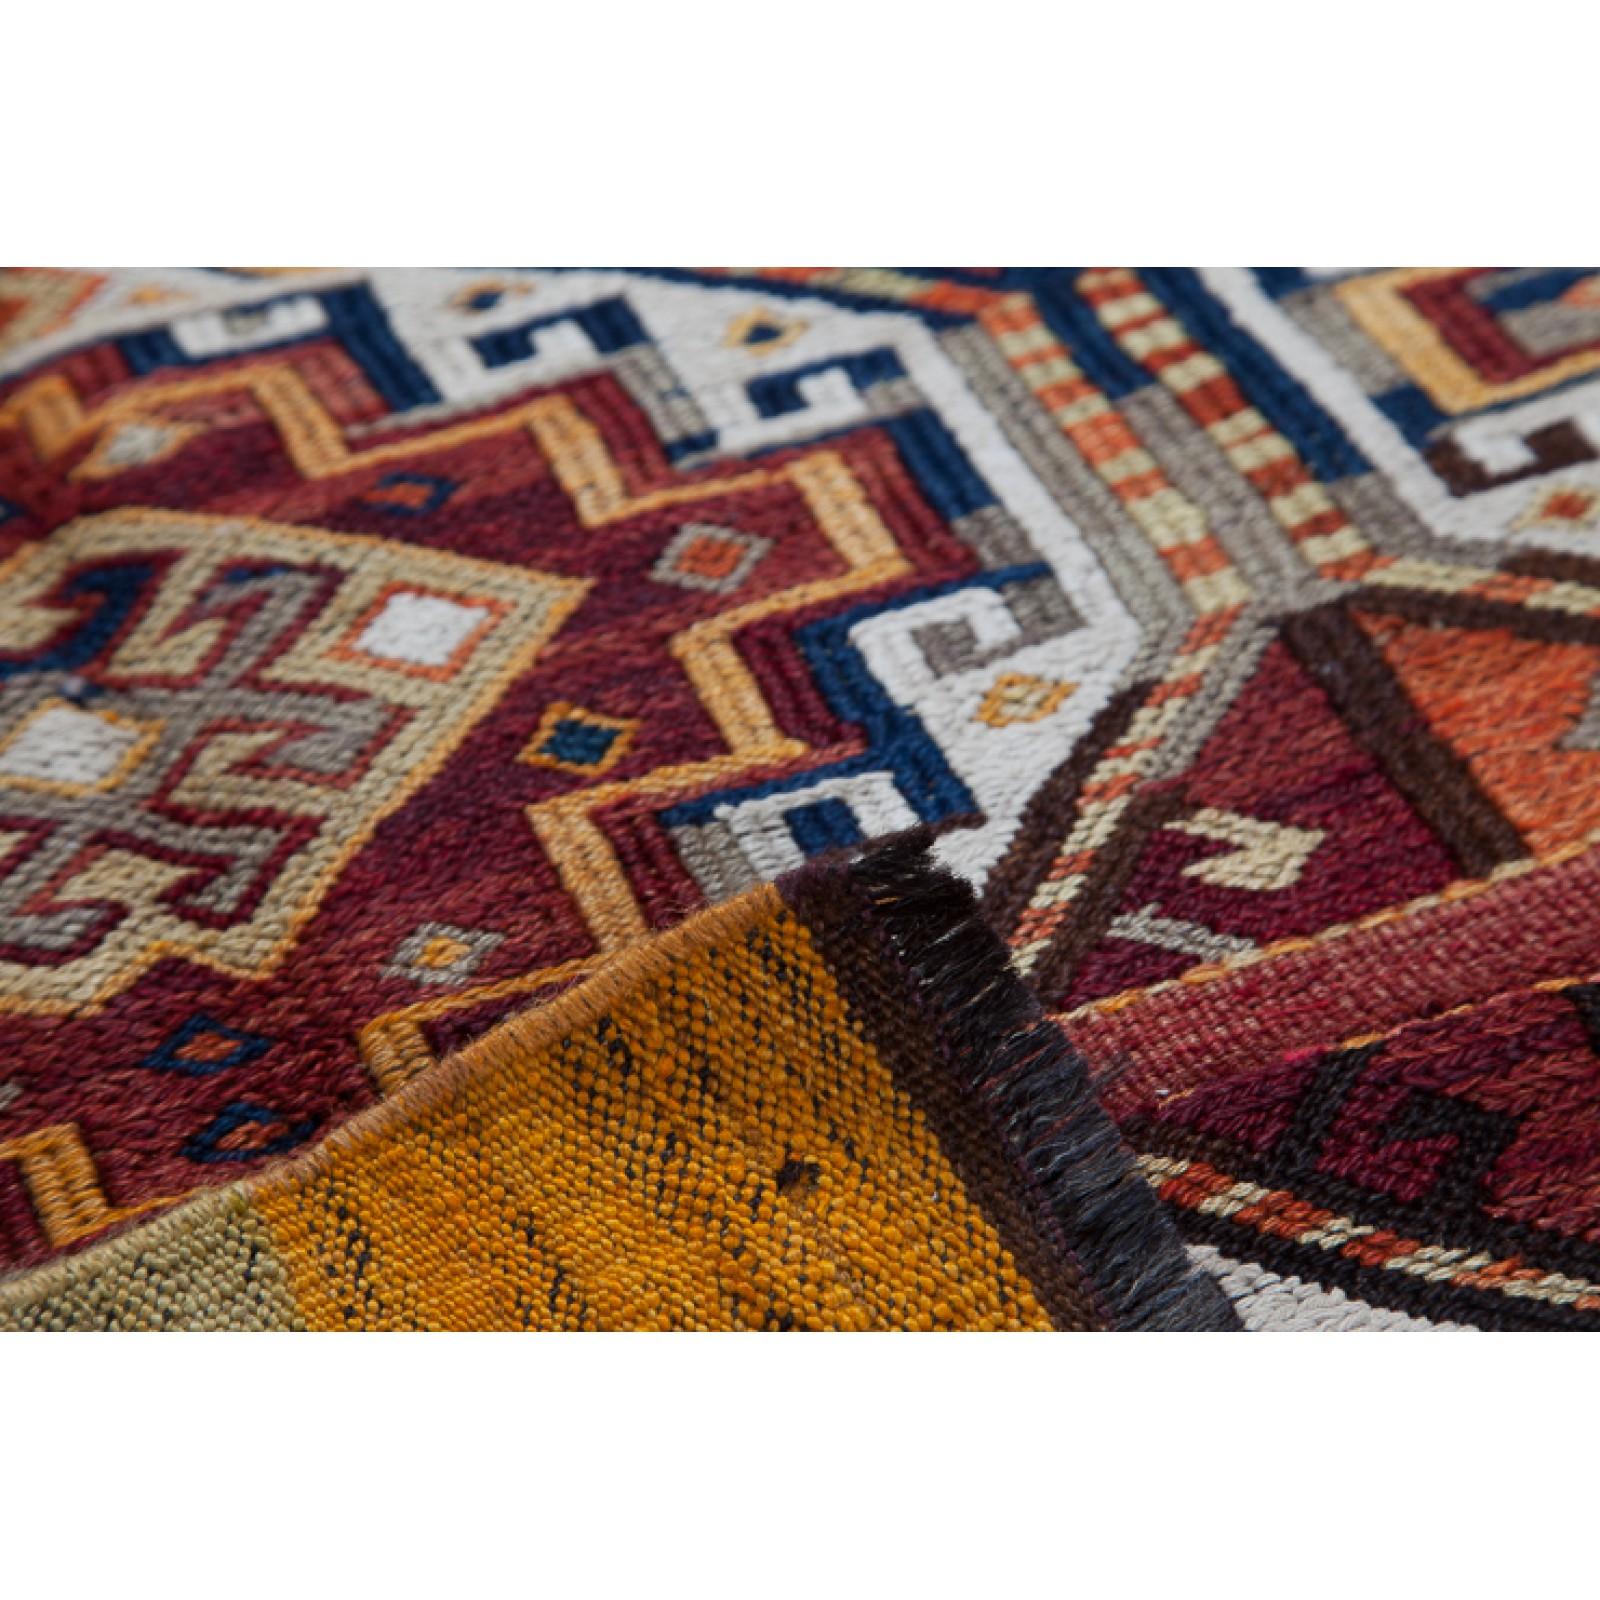 Dies ist ein ostanatolischer Vintage Tschowal-Kilim aus der Region Malatya mit Woll- und Ziegenhaarfäden und einer seltenen, schönen Farbkomposition.

Dieser antike Kelim mit hohem Sammlerwert hat wunderbare spezielle Farben und Texturen, die